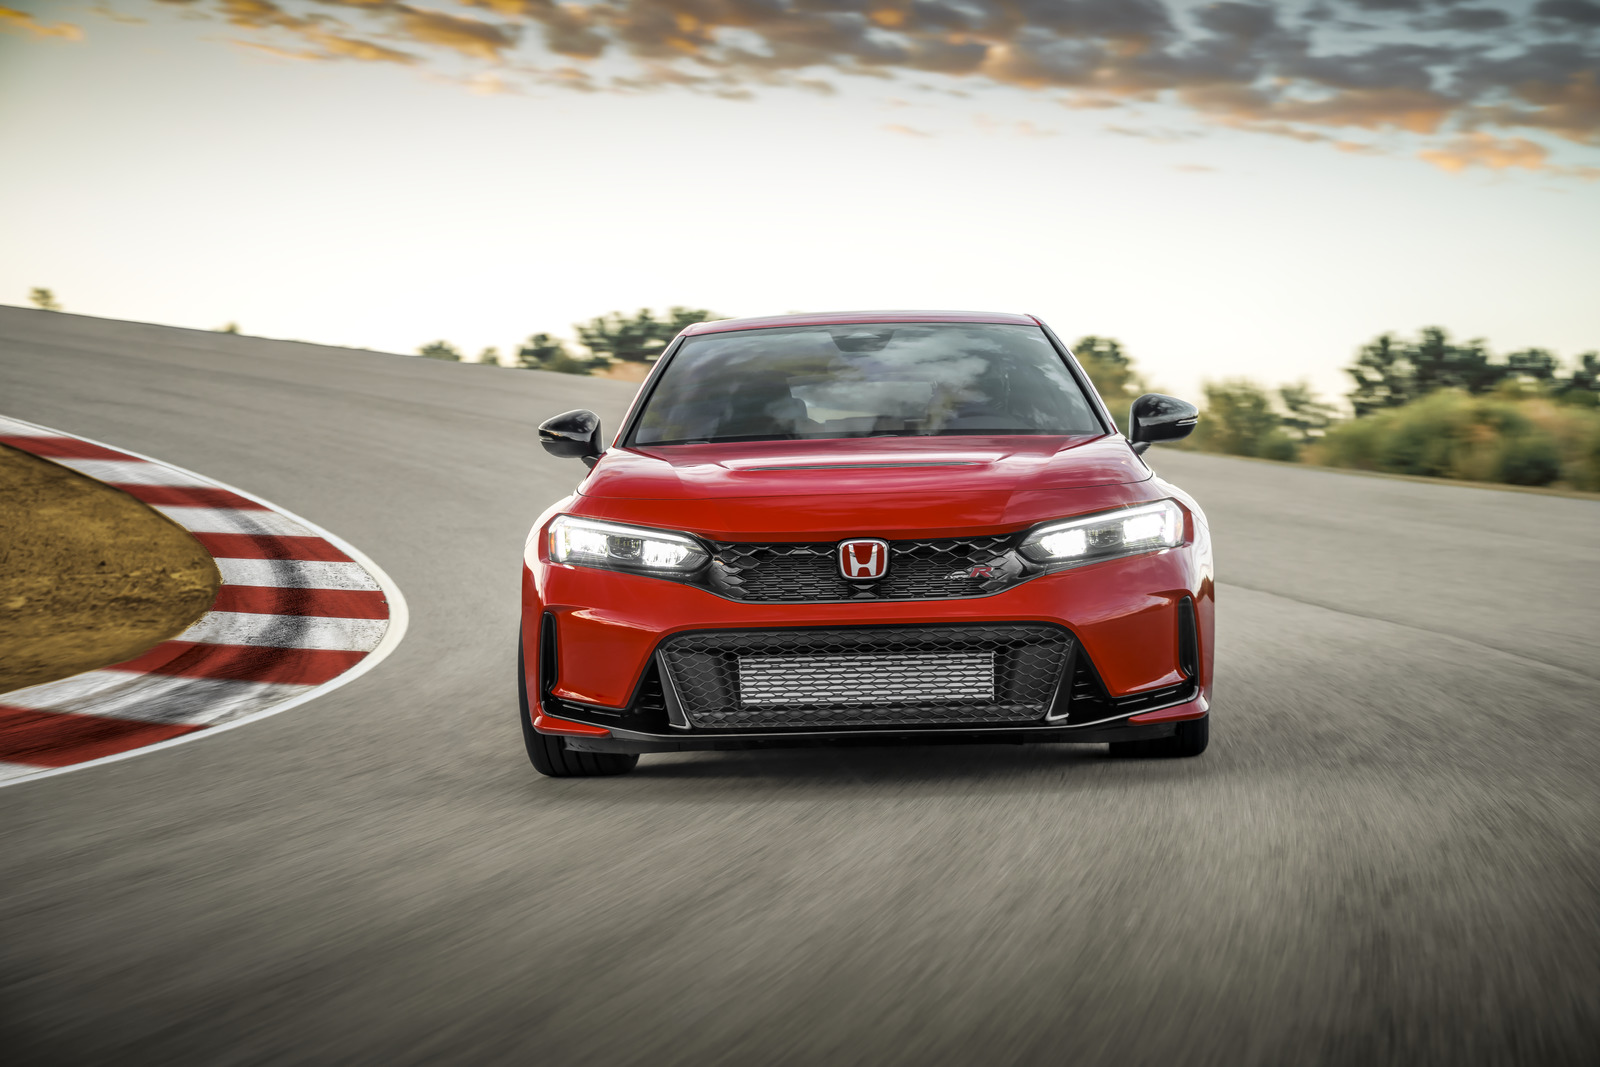 Honda Civic Type R thế hệ mới ra đời với những cải tiến về công nghệ